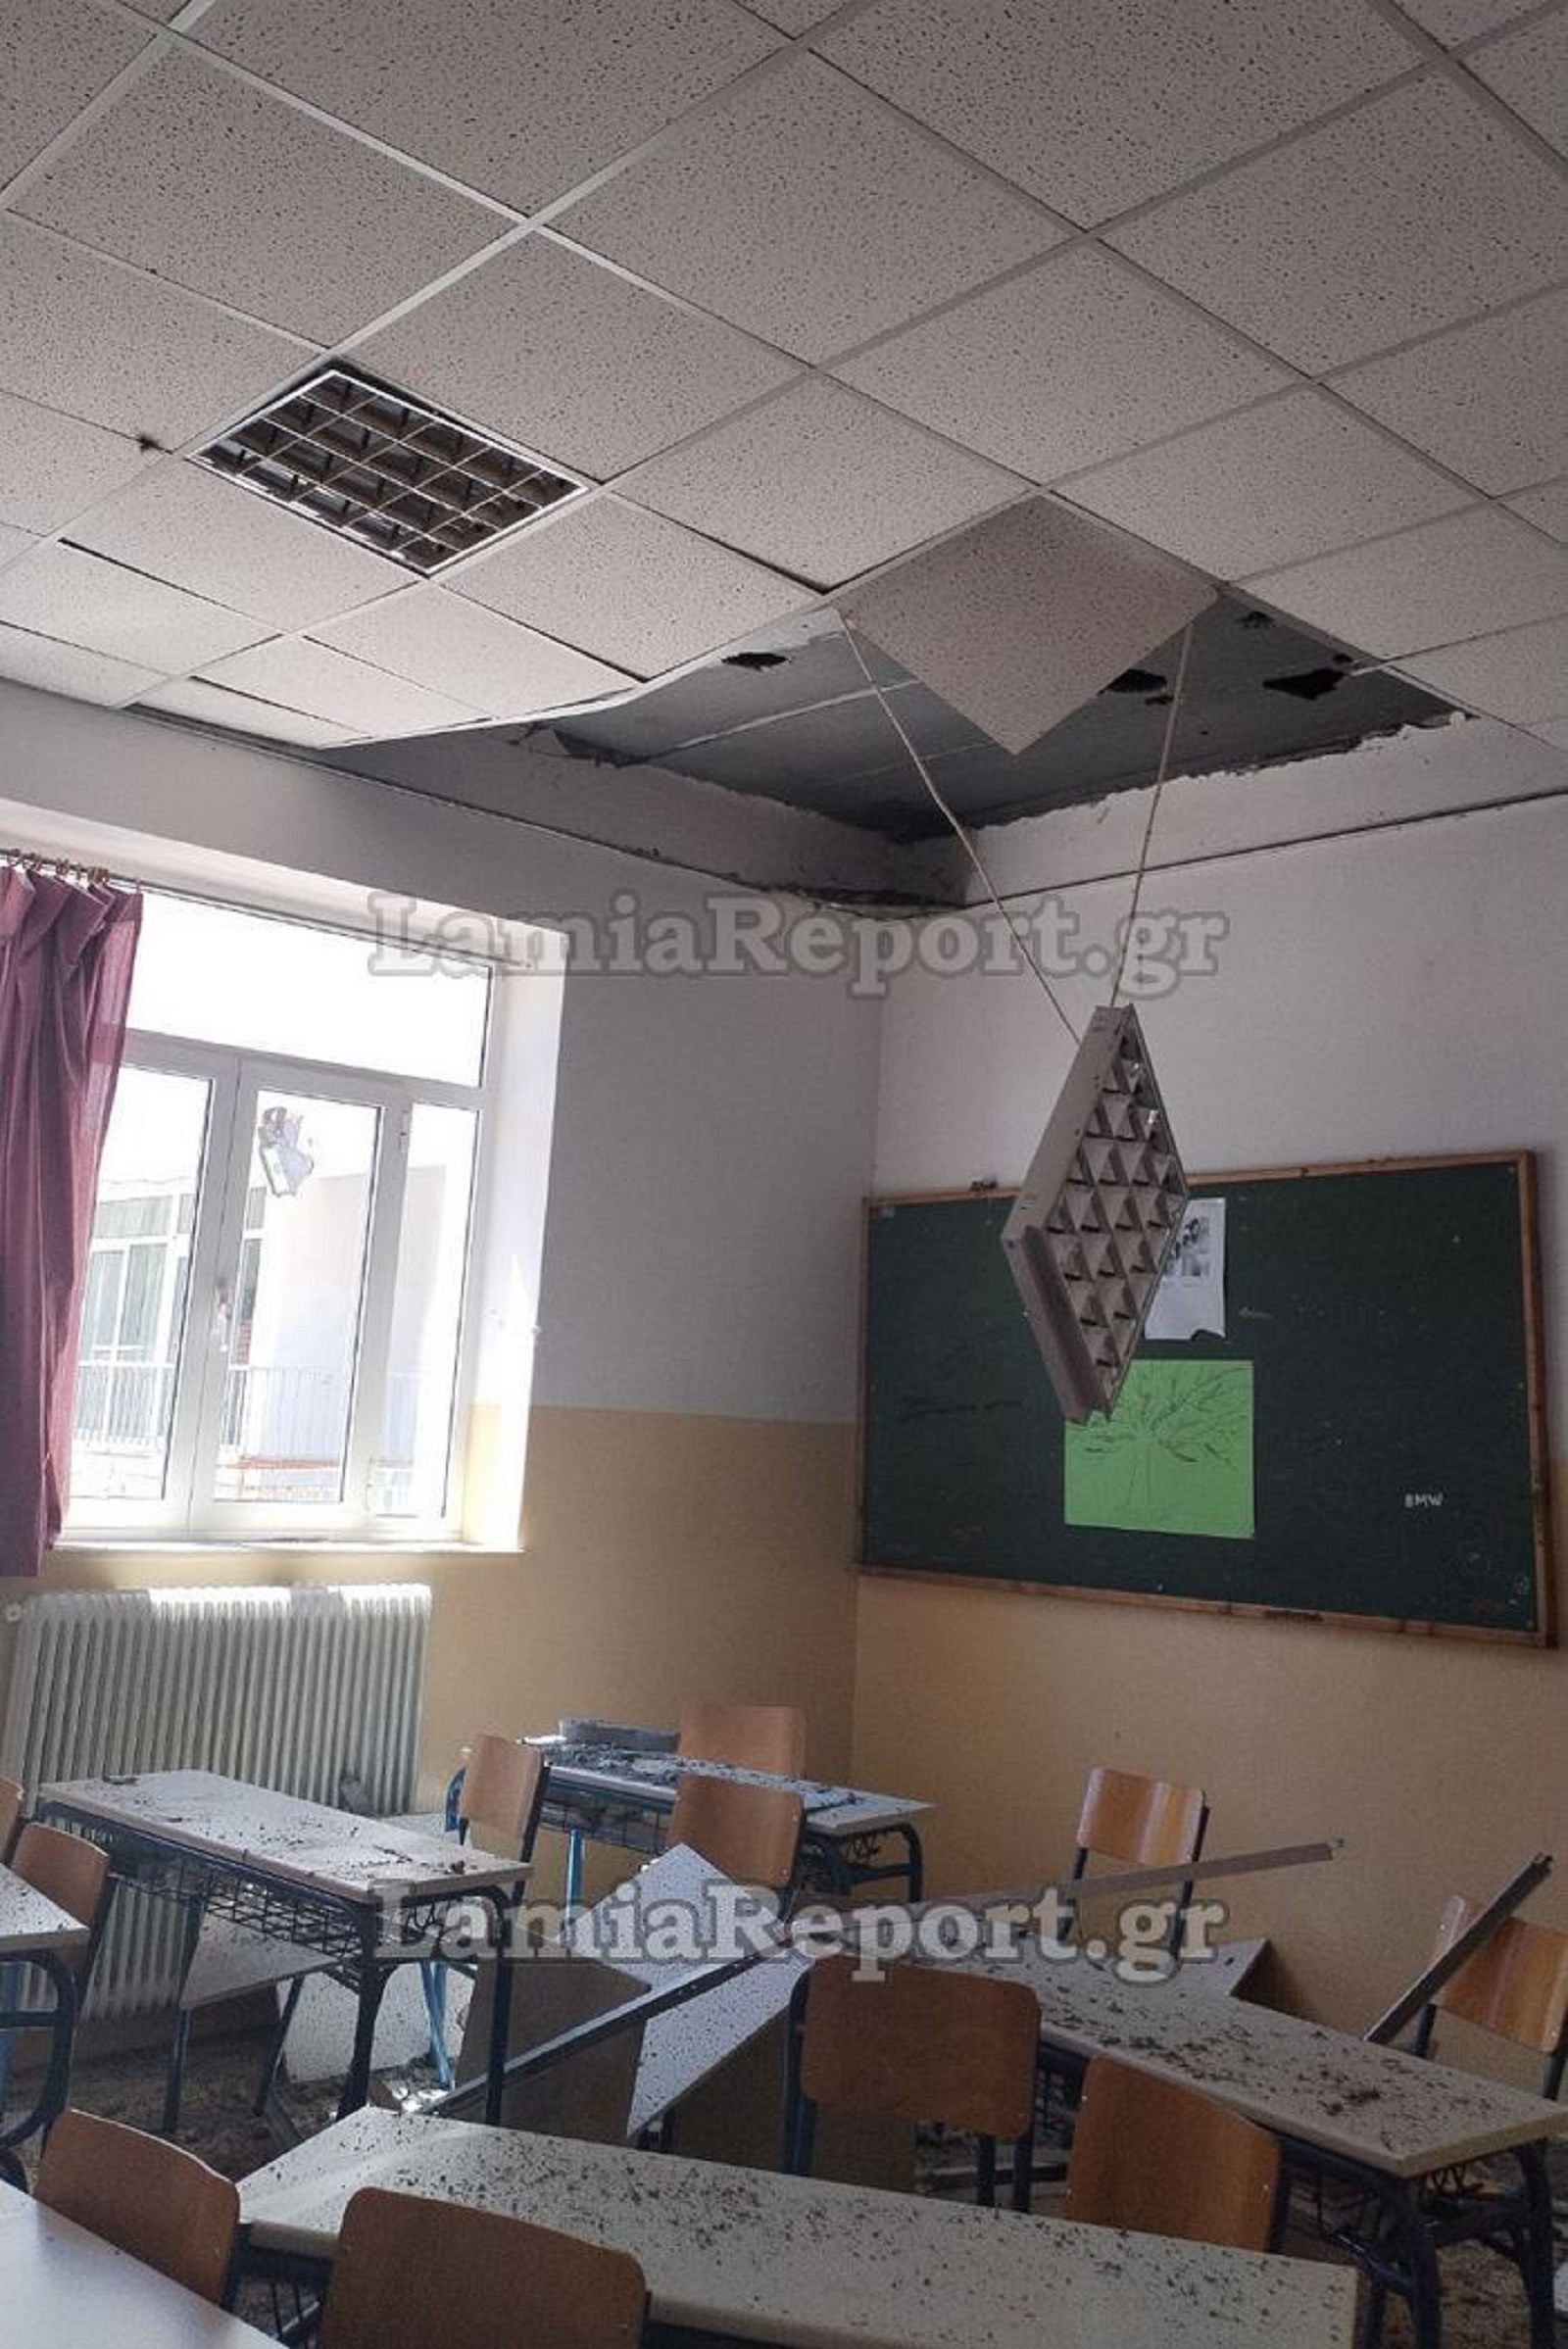 Κατέρρευσε τμήμα οροφής σχολικής αίθουσας σε λύκειο της Φθιώτιδας